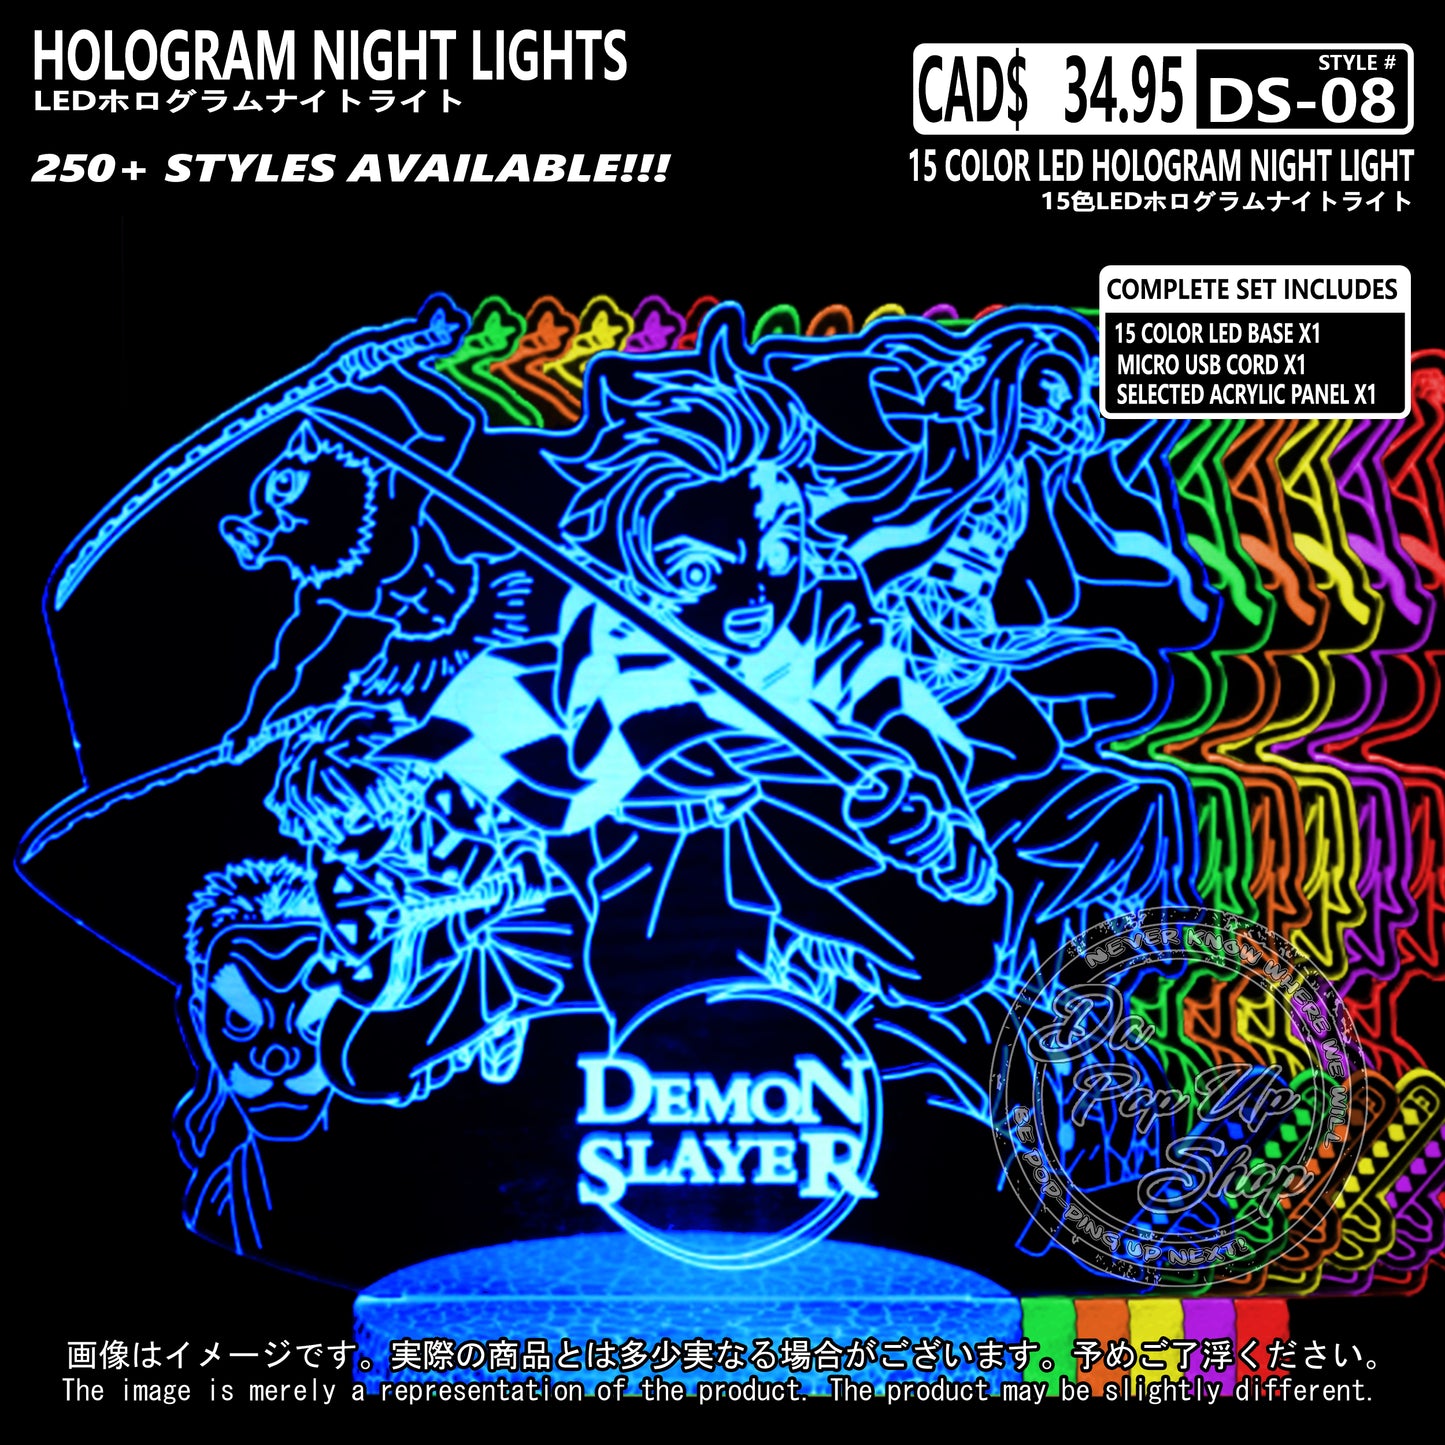 (DS-08) Demon Slayer Hologram LED Night Light